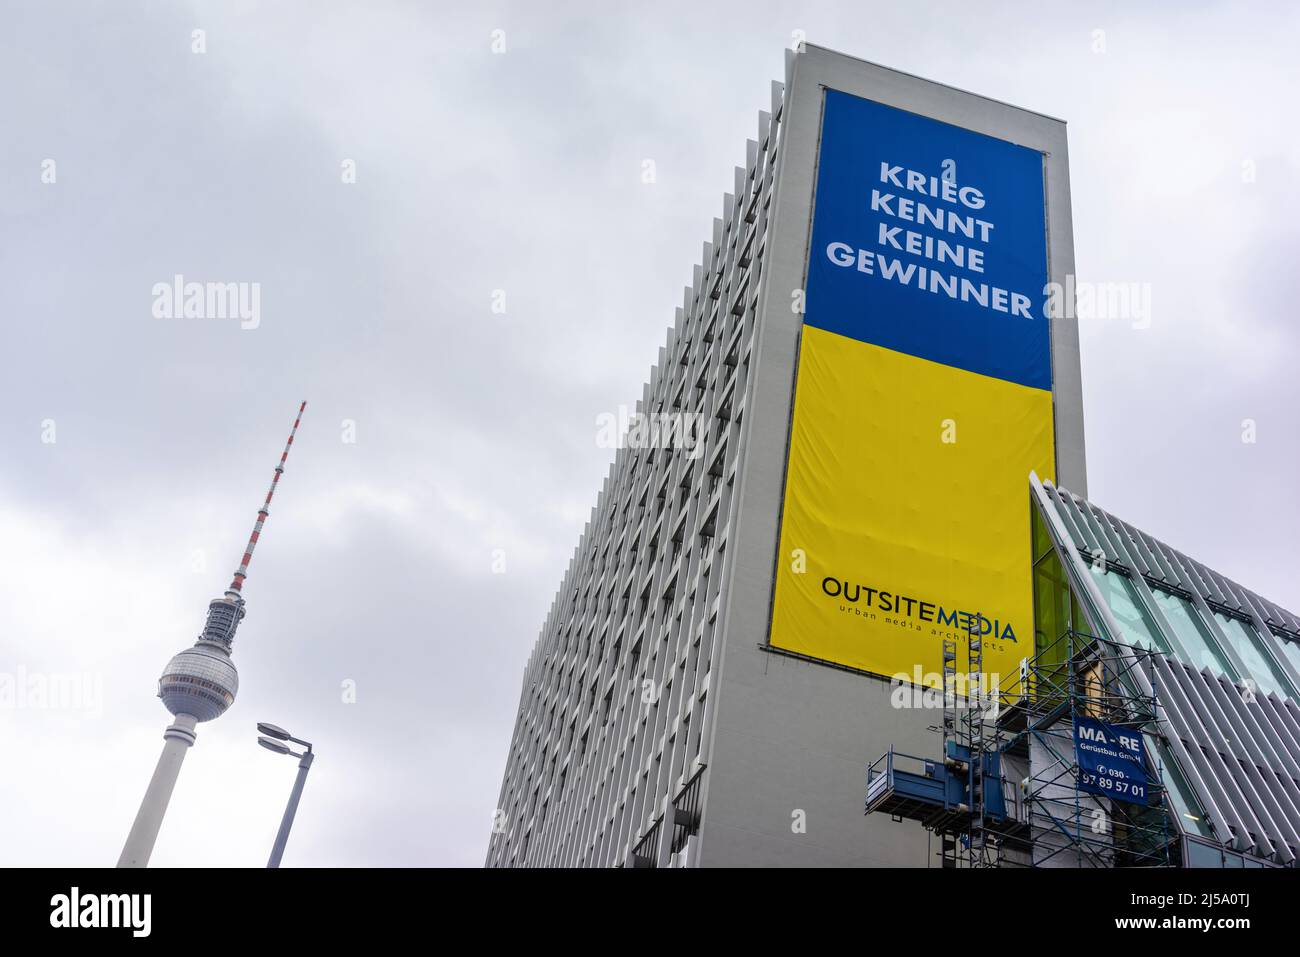 Krieg kennt keine Gewinner (la guerra non conosce i vincitori) banner in solidarietà con l'Ucraina all'Alexanderplatz di Berlino, Germania, Europa Foto Stock